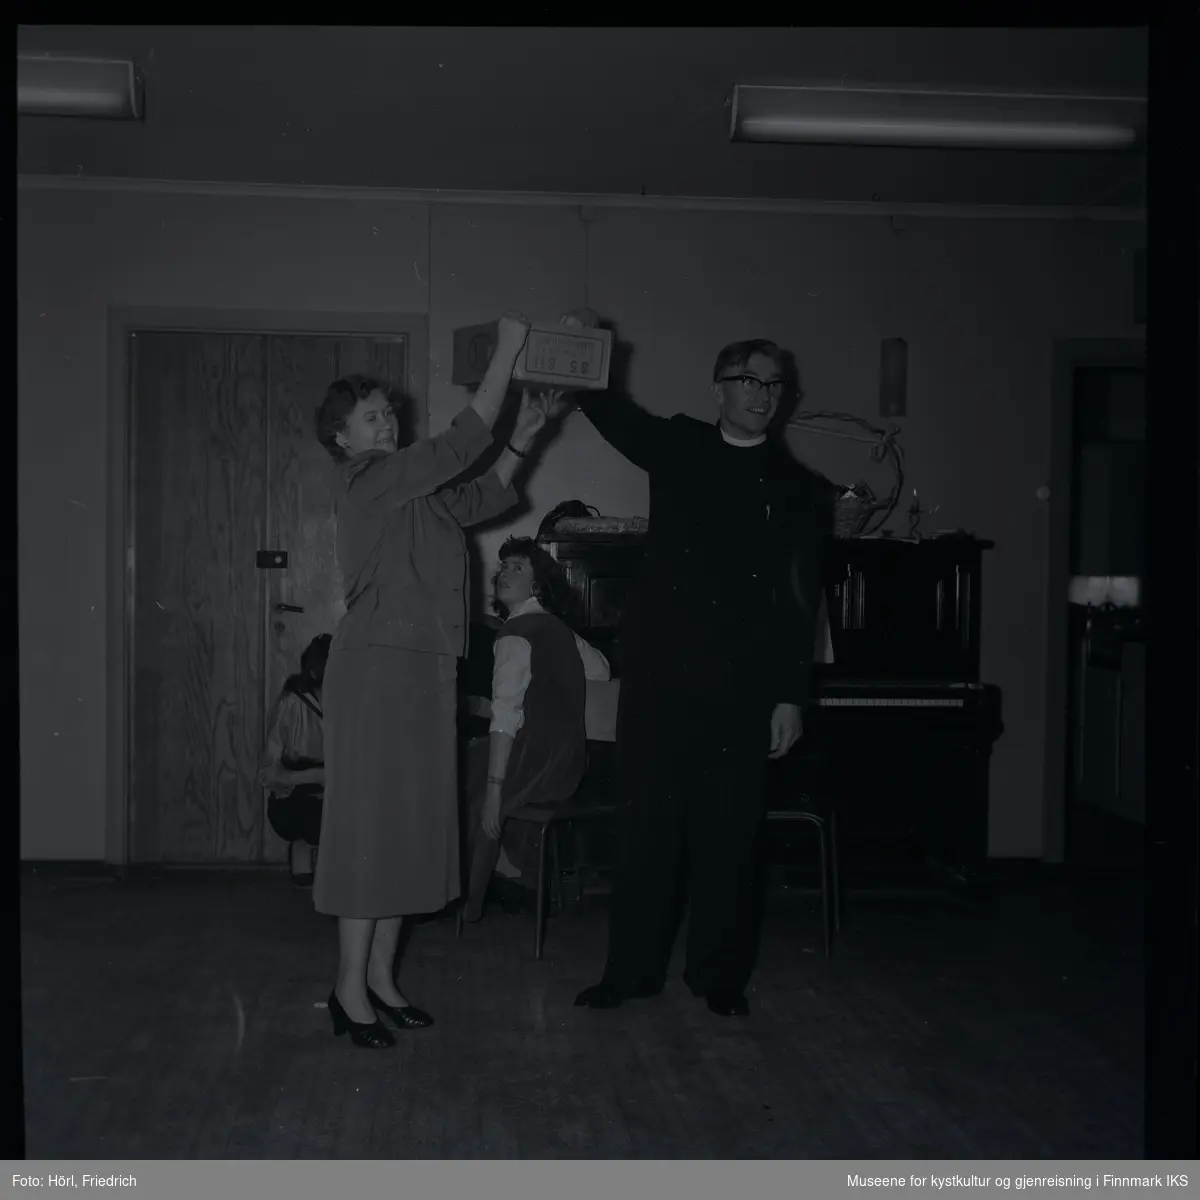 Den katolske menigheten i Hammerfest feirer juletrefest i 1957. Bildet viser en kvinne som holder opp en eske. Pater Spitz stikker hånden inn i den for å trekke en lodd. I bakgrunnen sitter tre kvinner ved siden av et piano, en av dem ser opp til esken med loddene. På pianoet ligger noe som ser ut som et tysk julebrød kalt "Stollen", der står det også en kurv med sløyfe og et stearinlys.